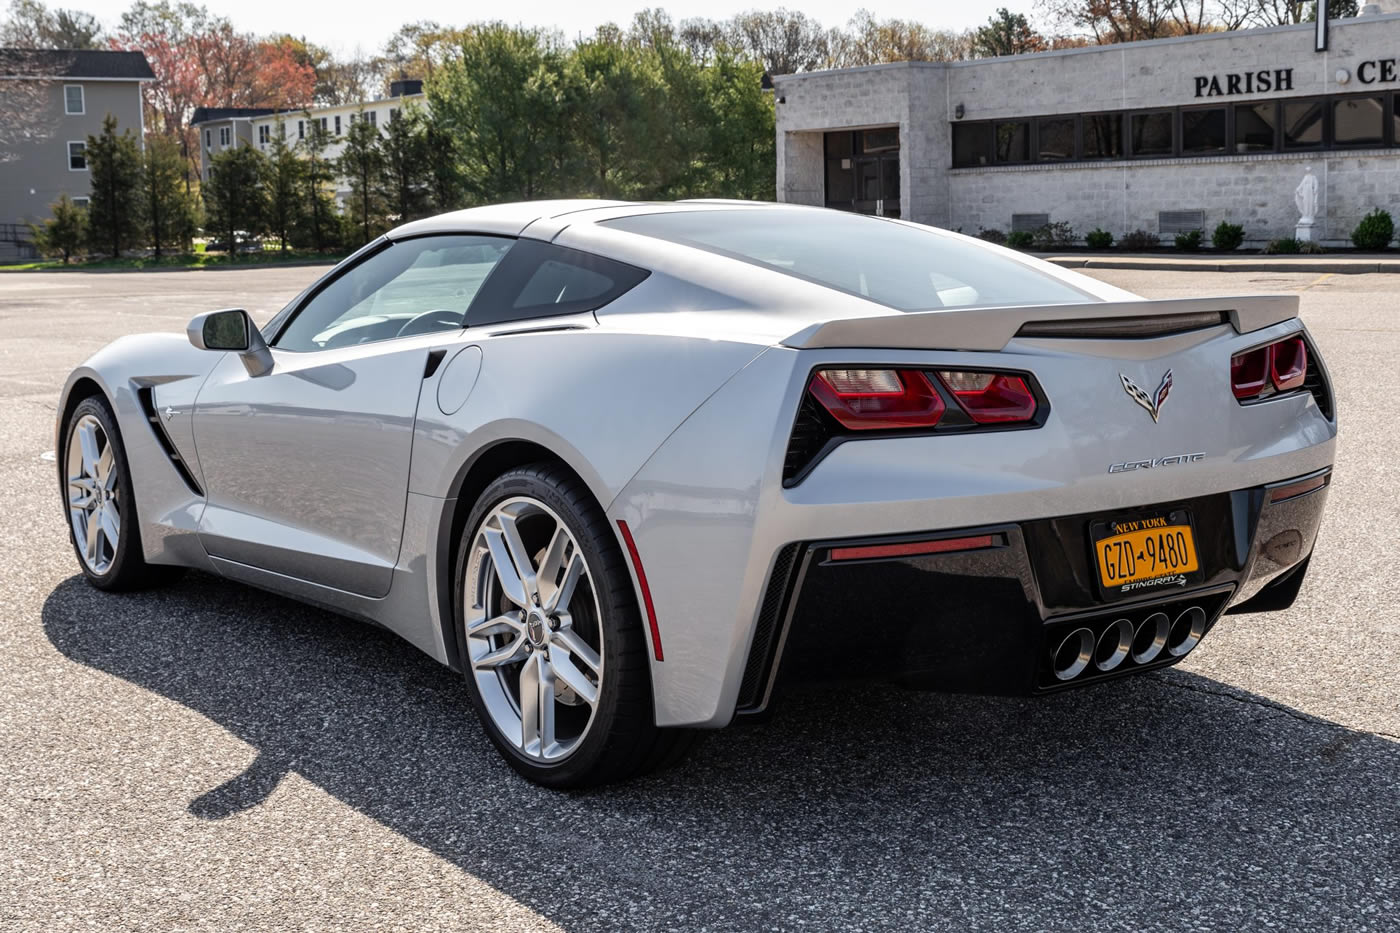 2014 Corvette Stingray Coupe in Blade Silver Metallic